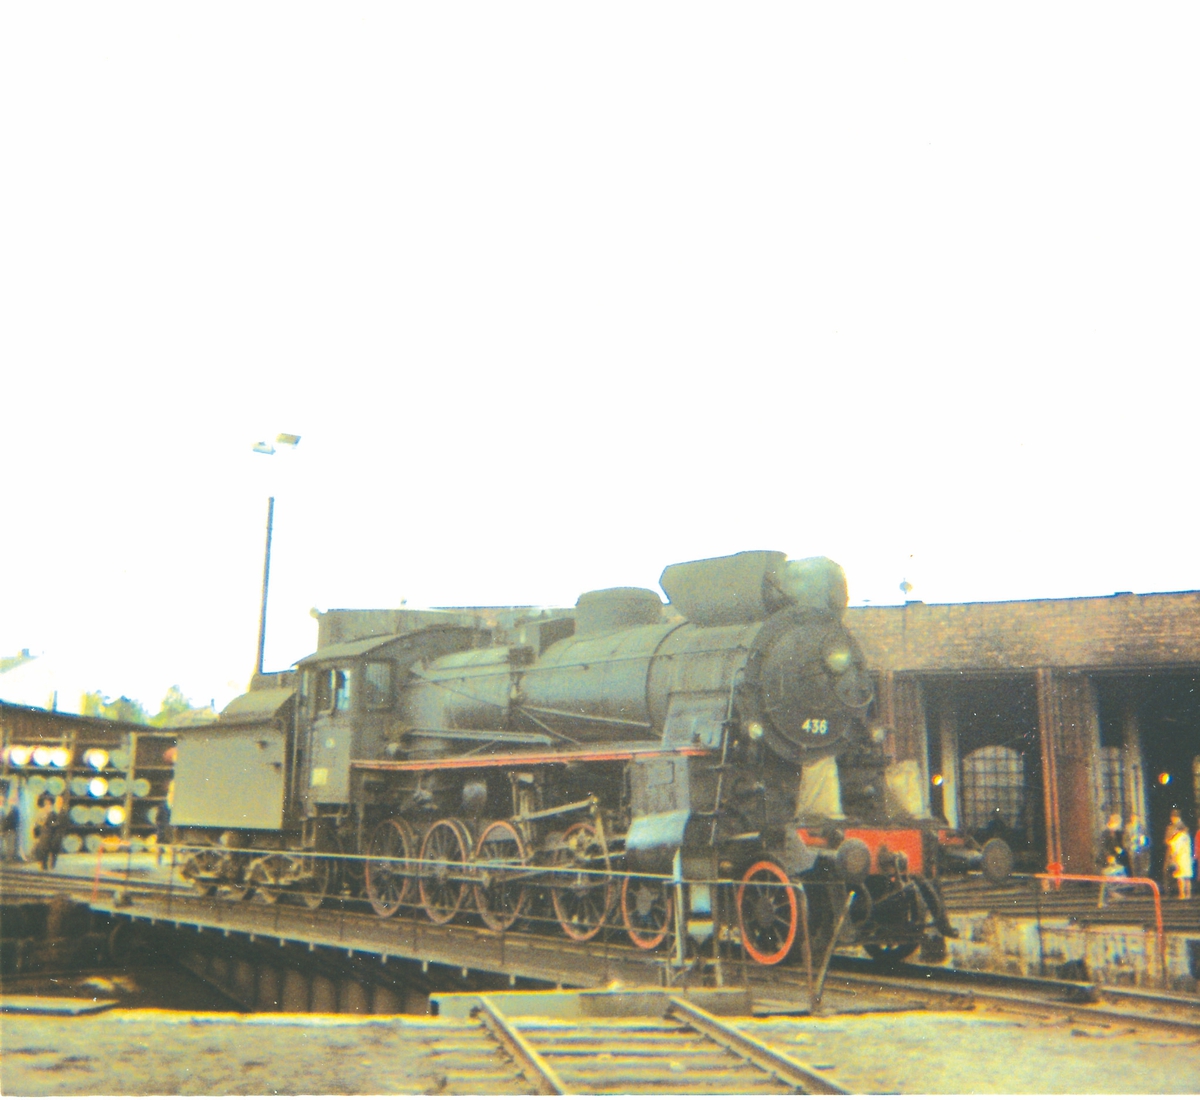 Damplokomotiv type 26c nr. 436 på svingskiven på Hamar stasjon, trukket frem for fotografering i forbindelse med Svenska Järnvägsklubbens besøk.